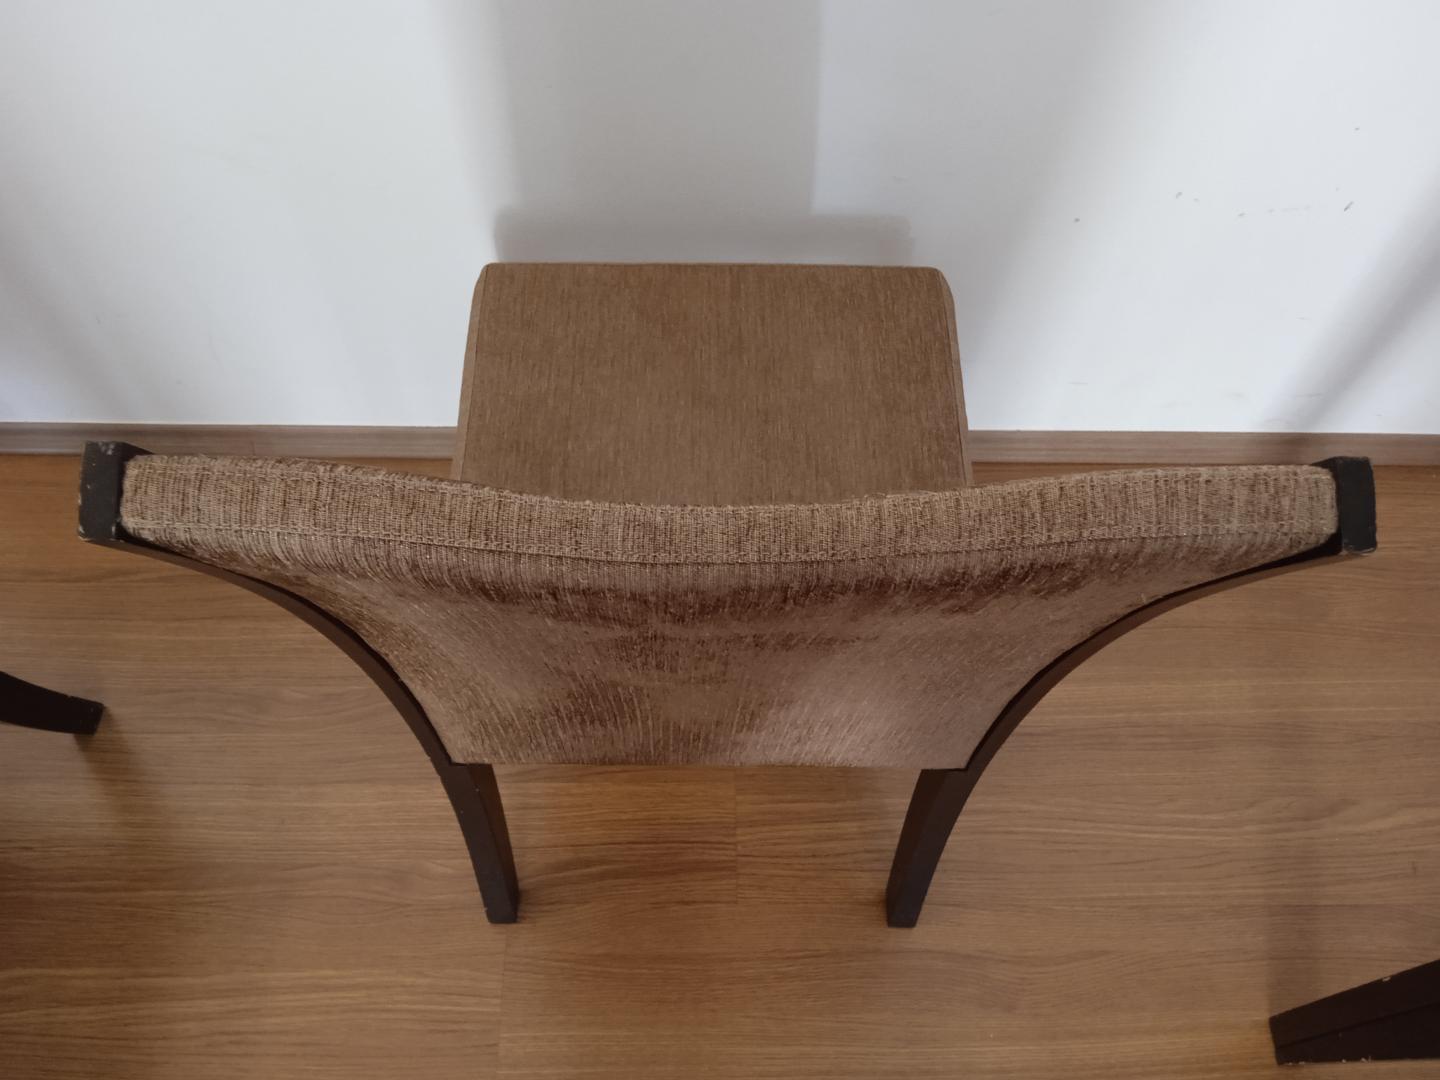 Cadeira fixa estofada s/ braços em Madeira / Estofado Marrom 98 cm x 48 cm x 56 cm